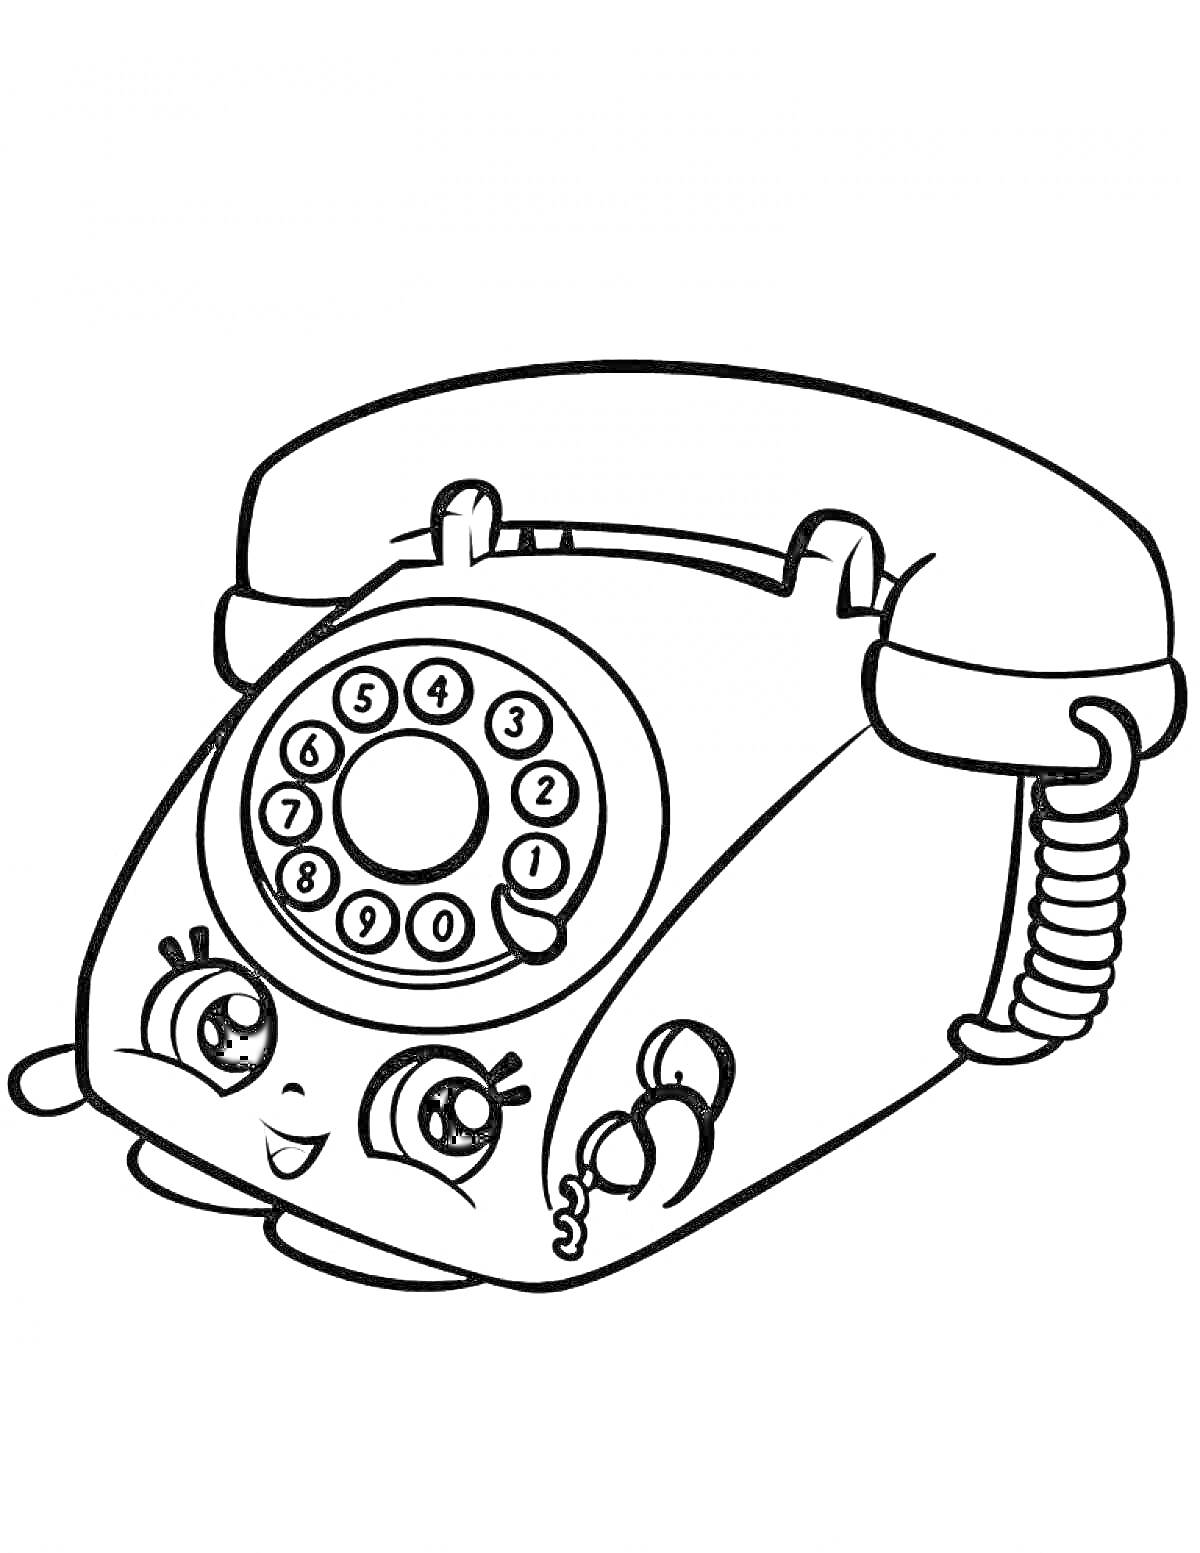 Винтажный телефон с антропоморфным лицом и дисковым номеронабирателем